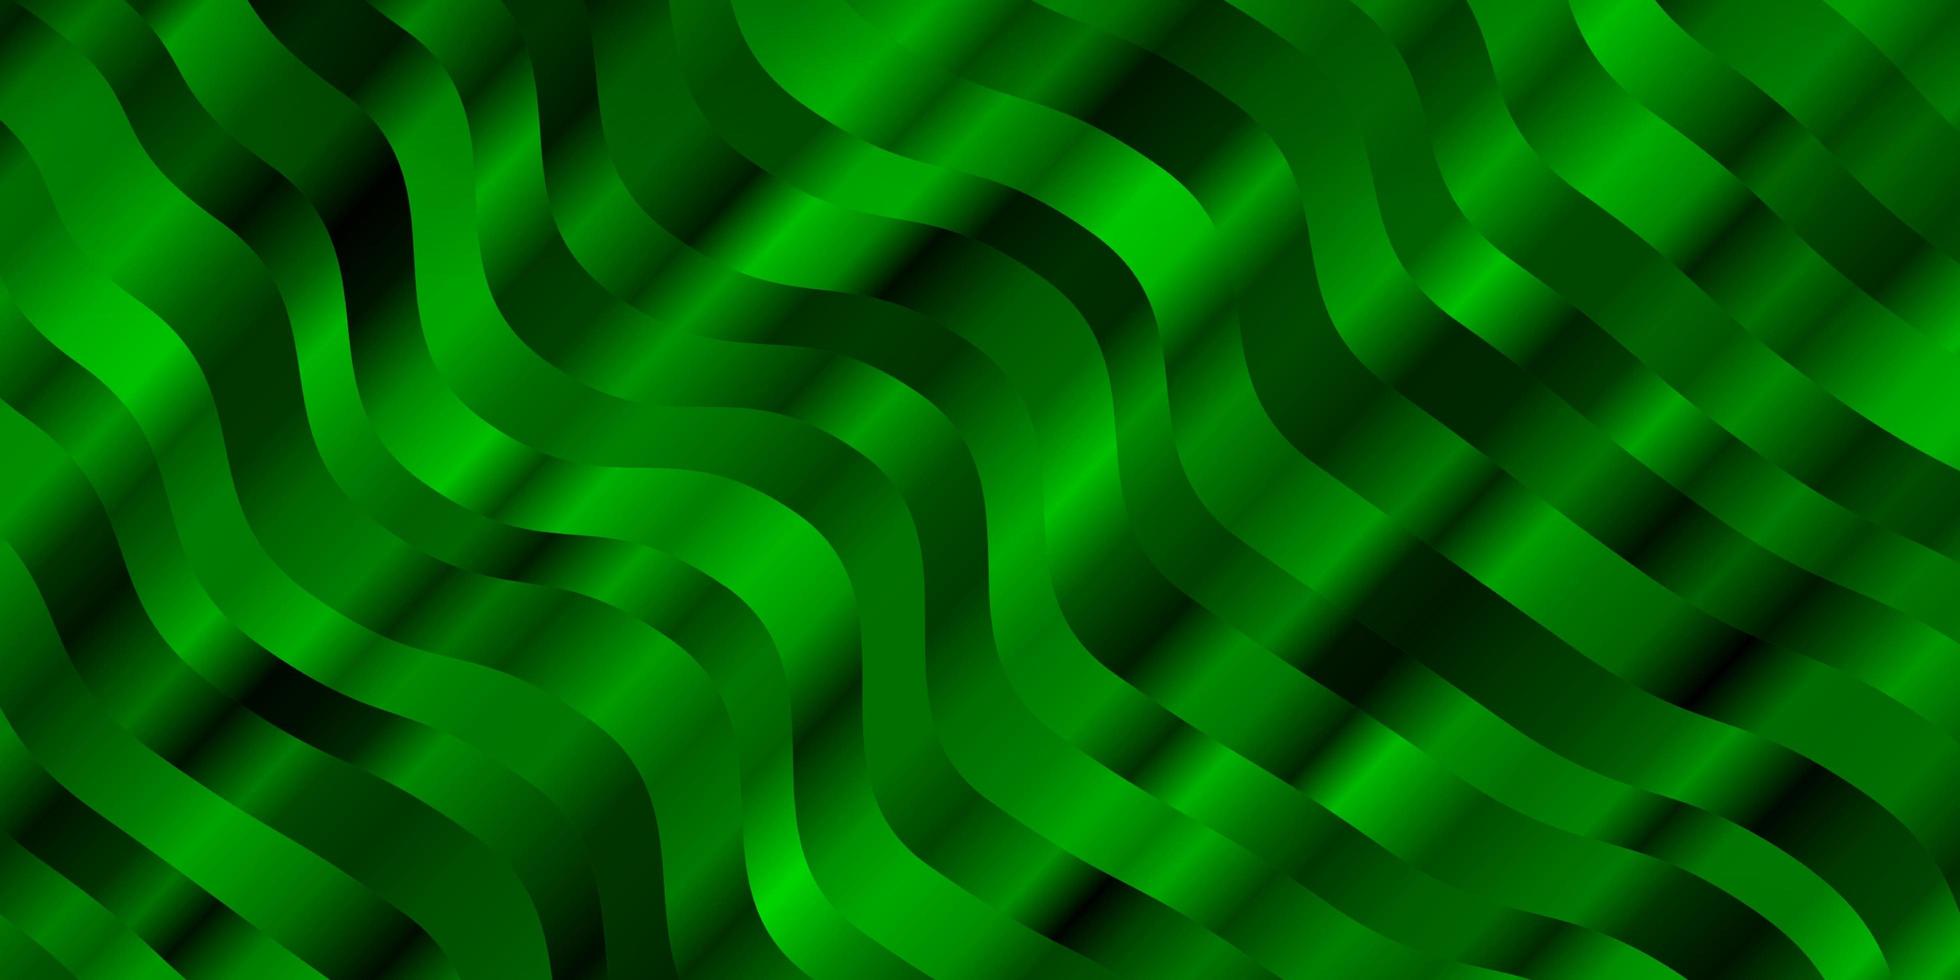 toile de fond de vecteur vert clair avec arc de cercle. illustration abstraite colorée avec des courbes de dégradé. conception pour la promotion de votre entreprise.